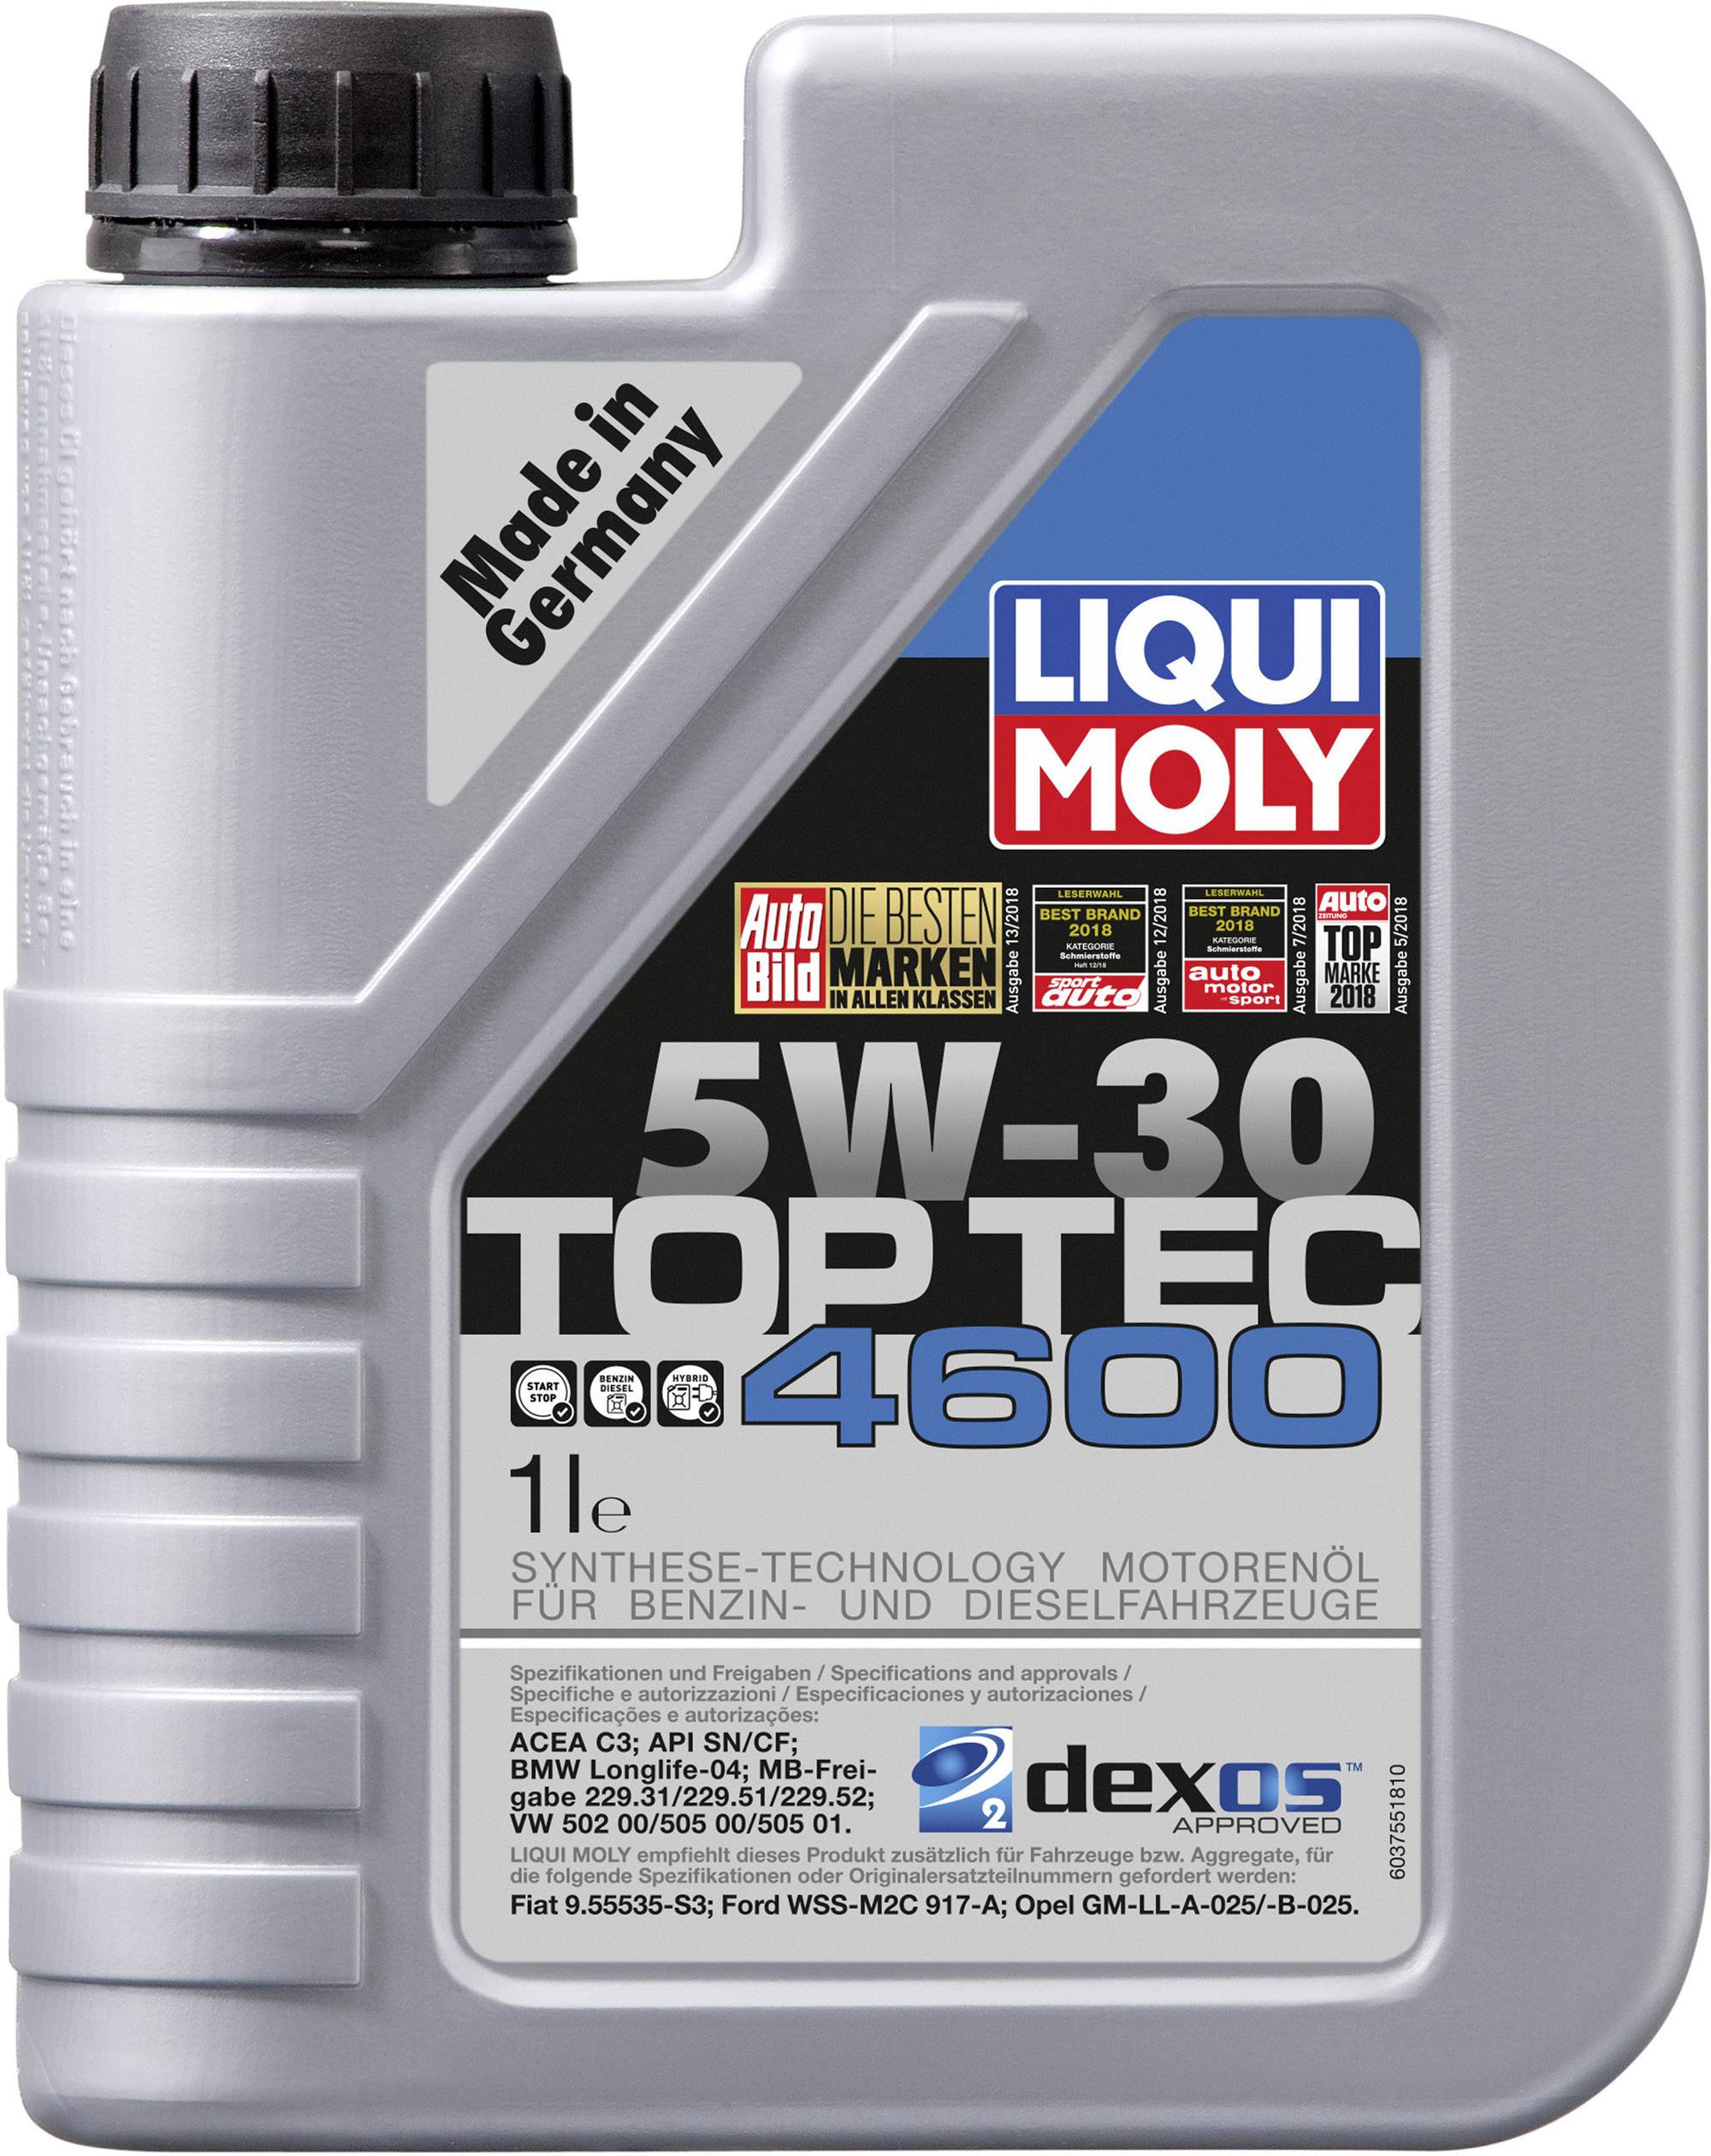 Liqui Moly Top Tec 4600 5W-30 3755 Engine oil 1 l